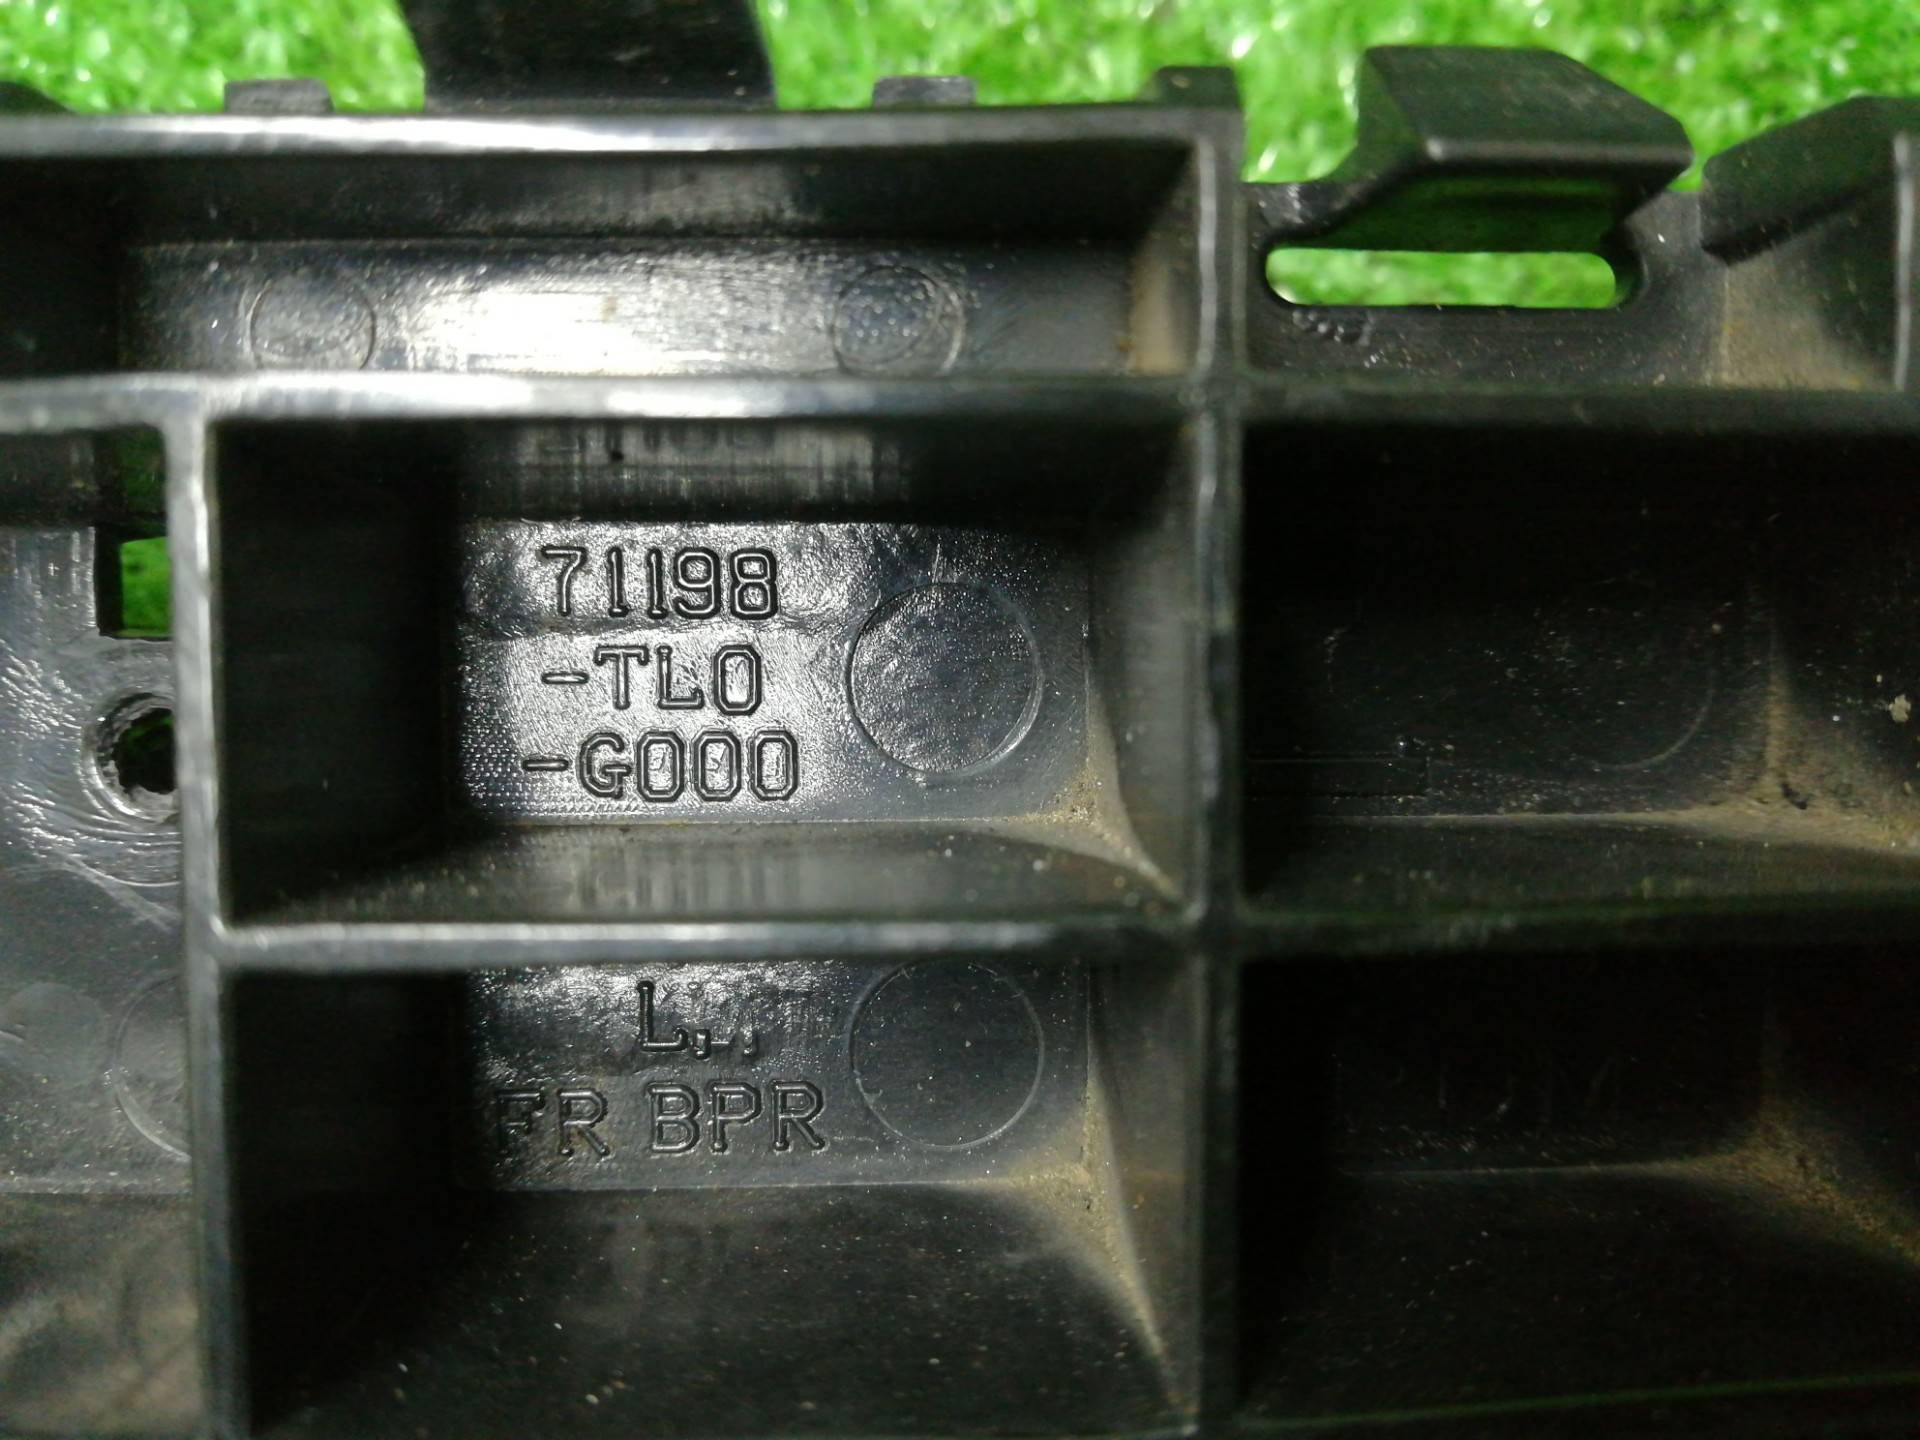 Кронштейн крепления бампера к Honda Accord 71198TL0G000, 2010, купить | DT-299192. Фото #2